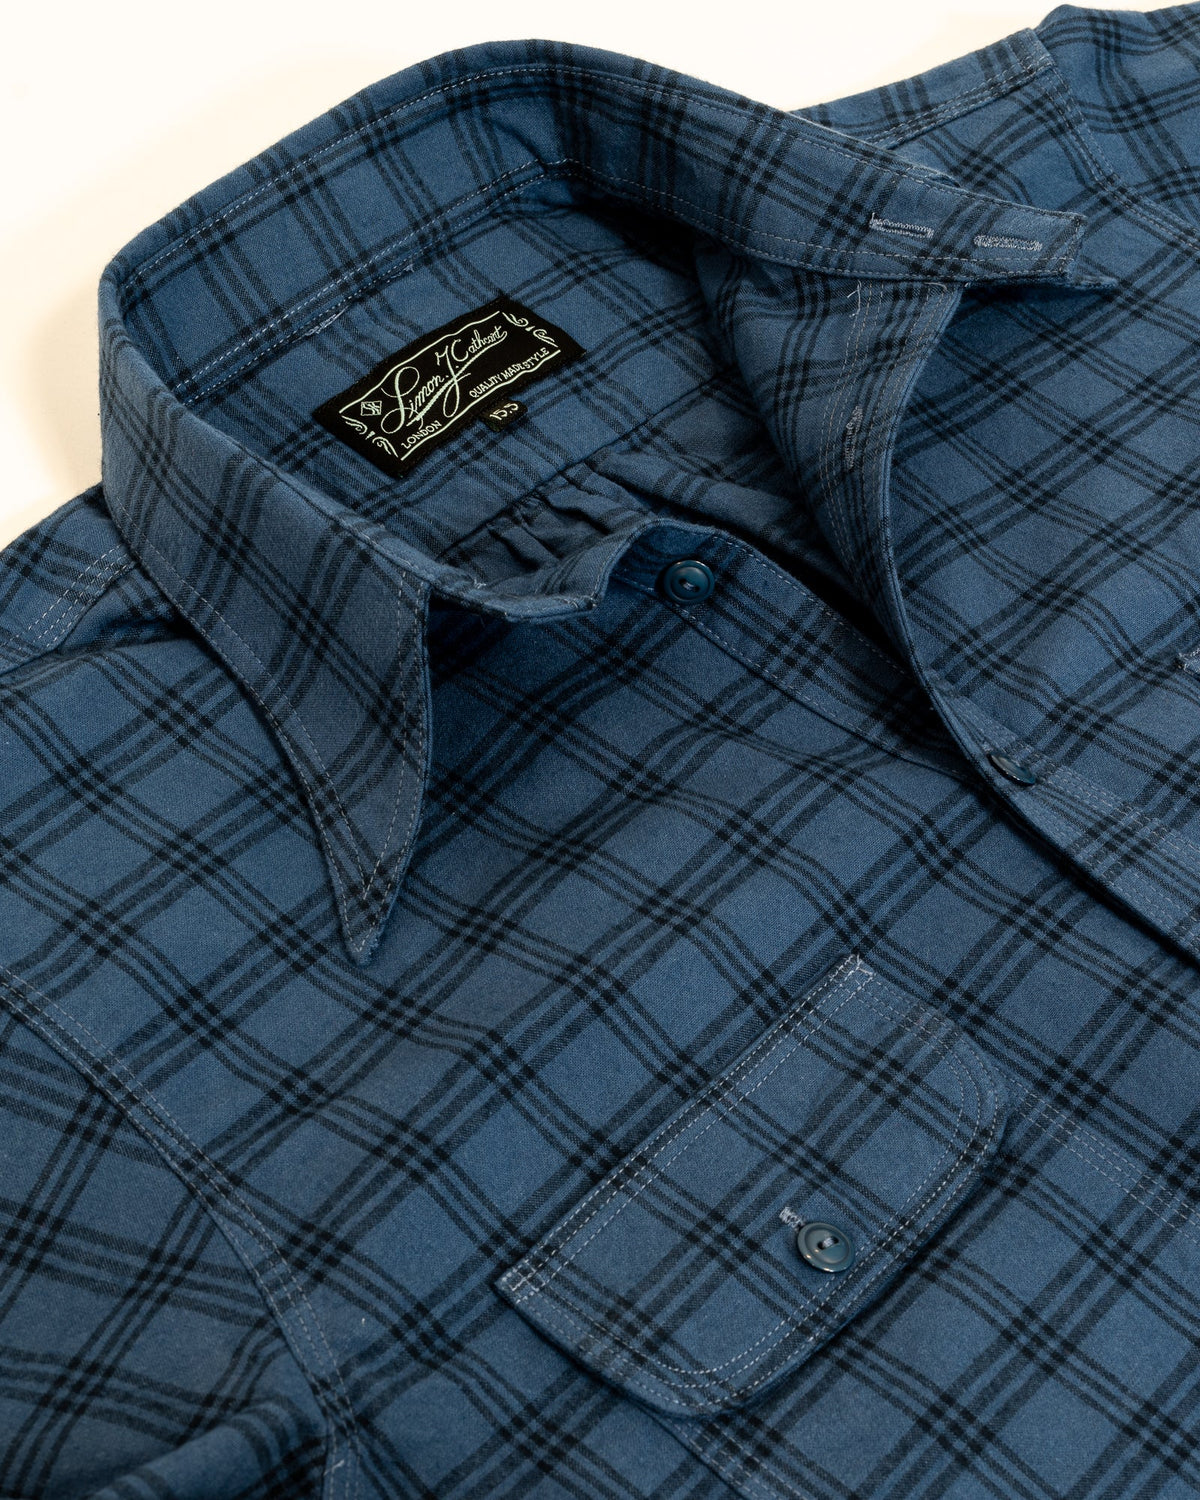 Sample Blue Yukon Shirt - Size 16